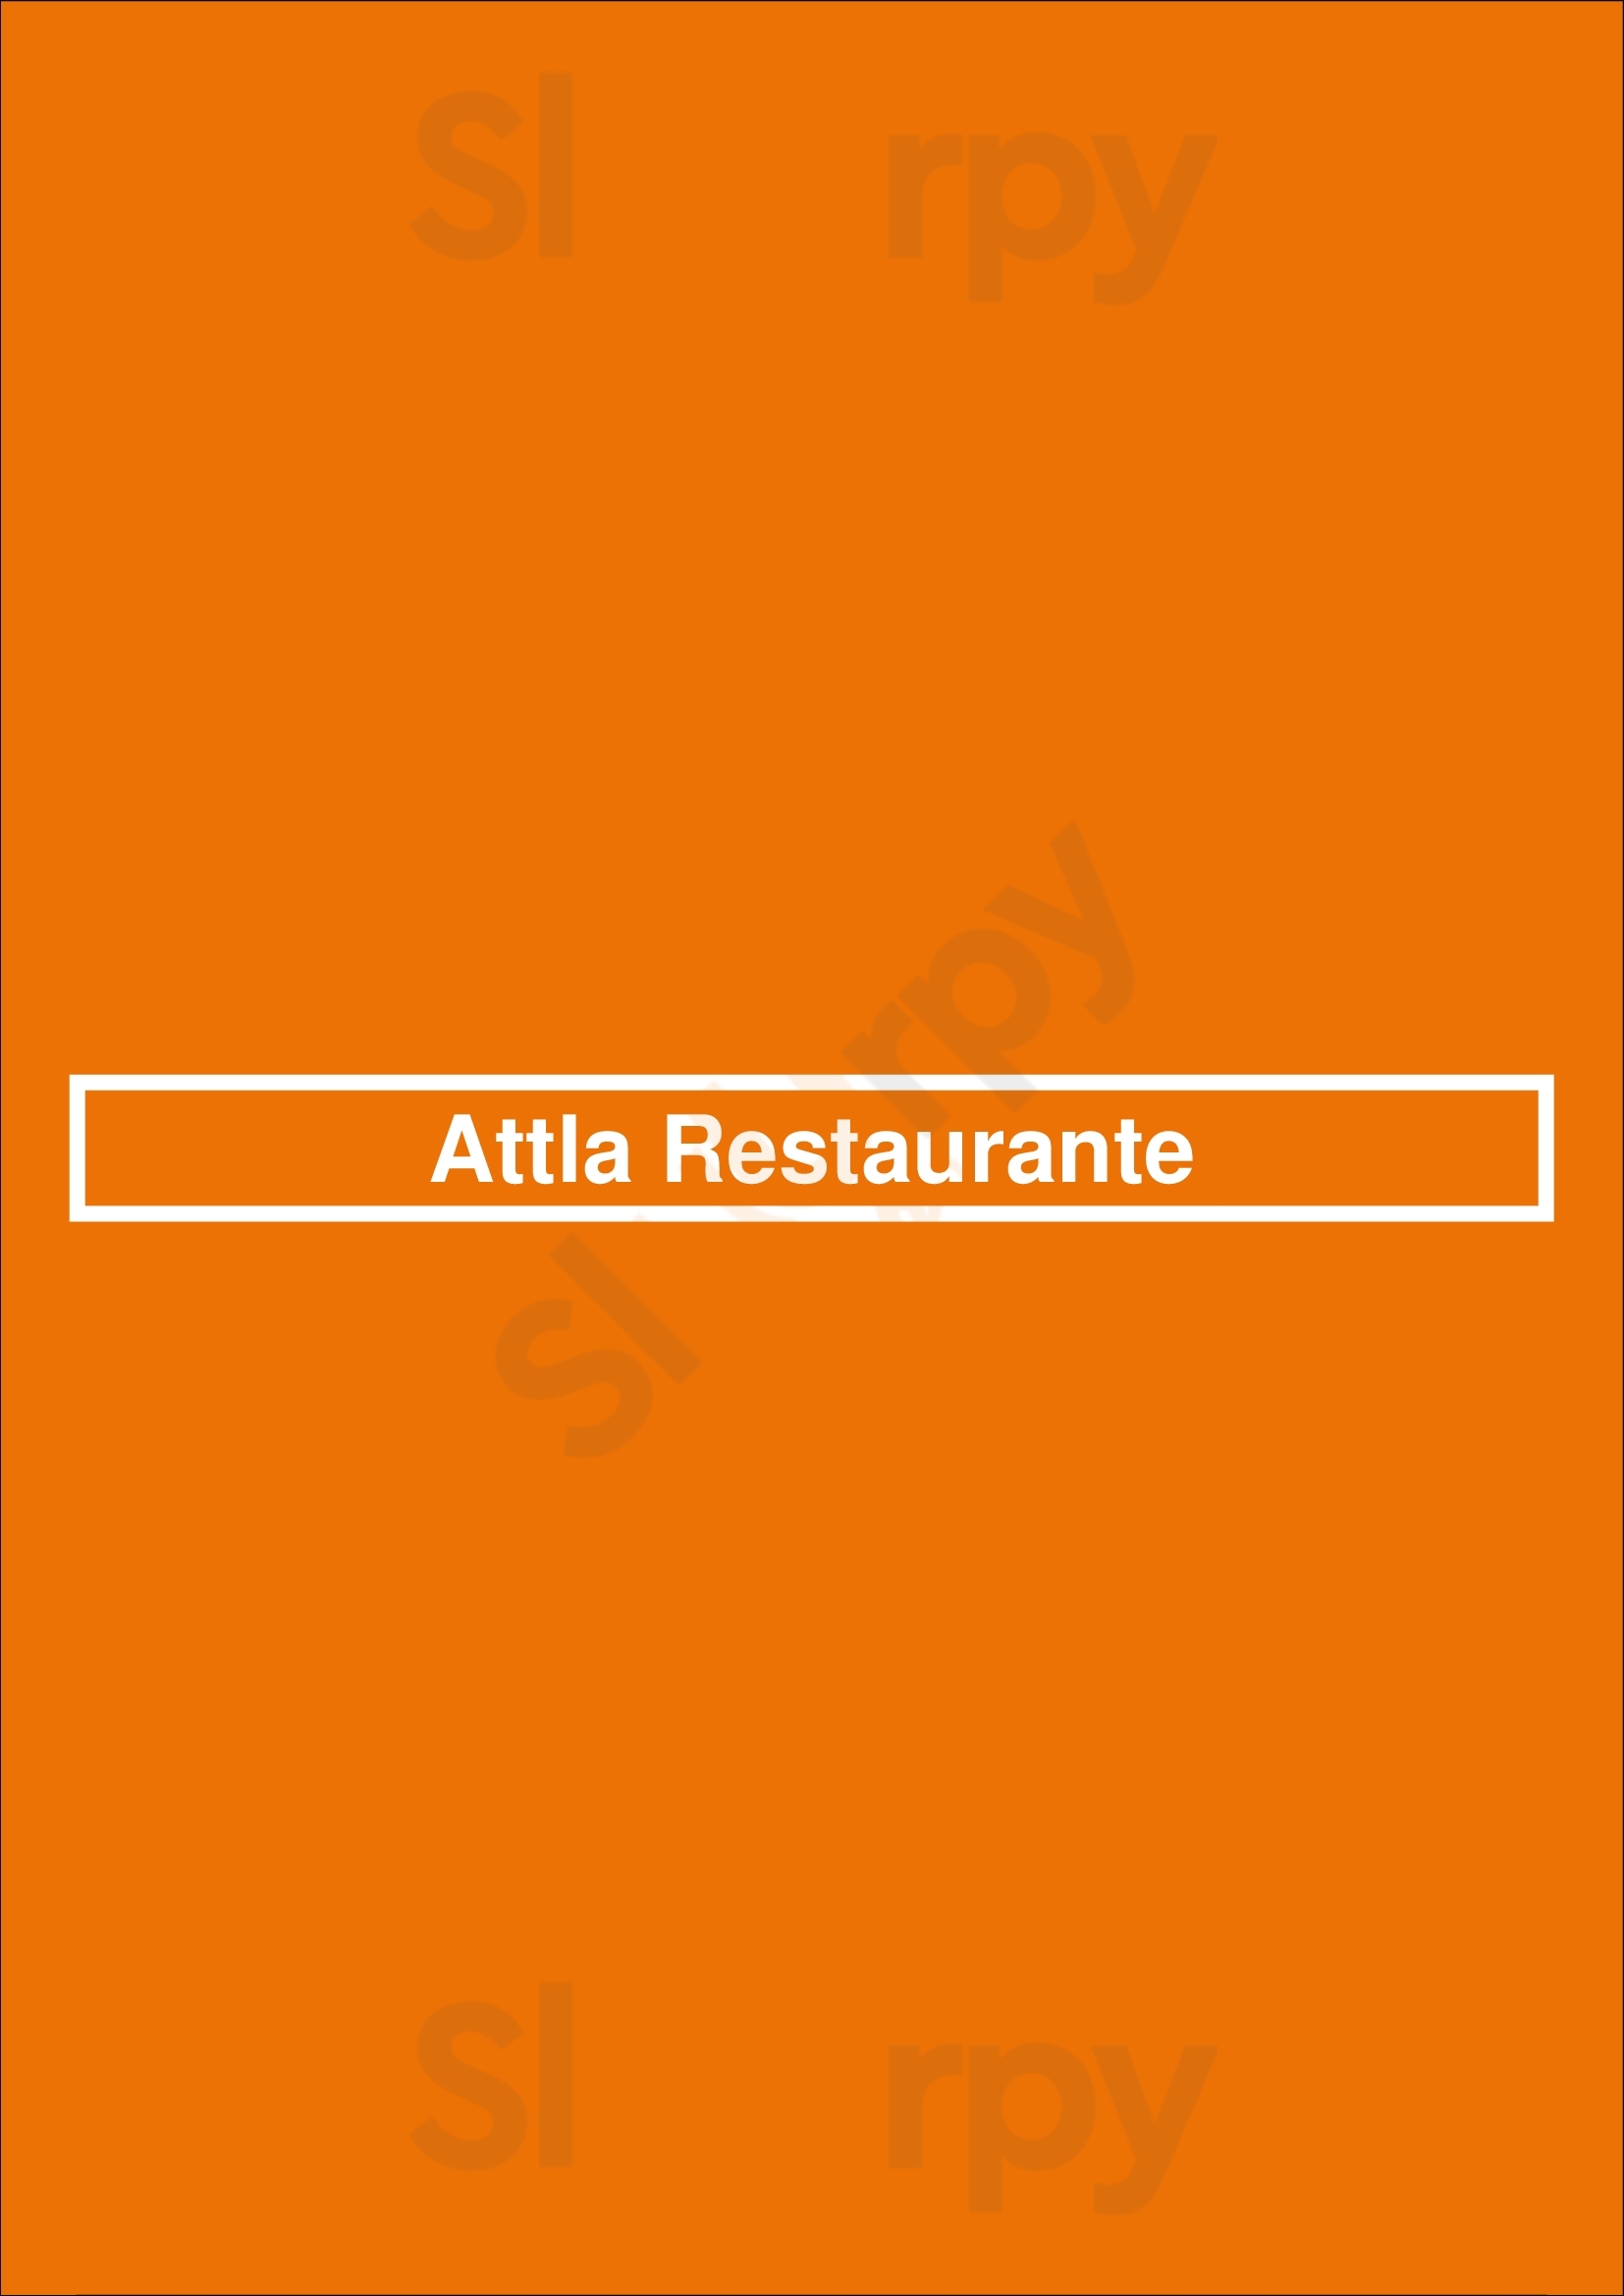 Attla Restaurante Lisboa Menu - 1